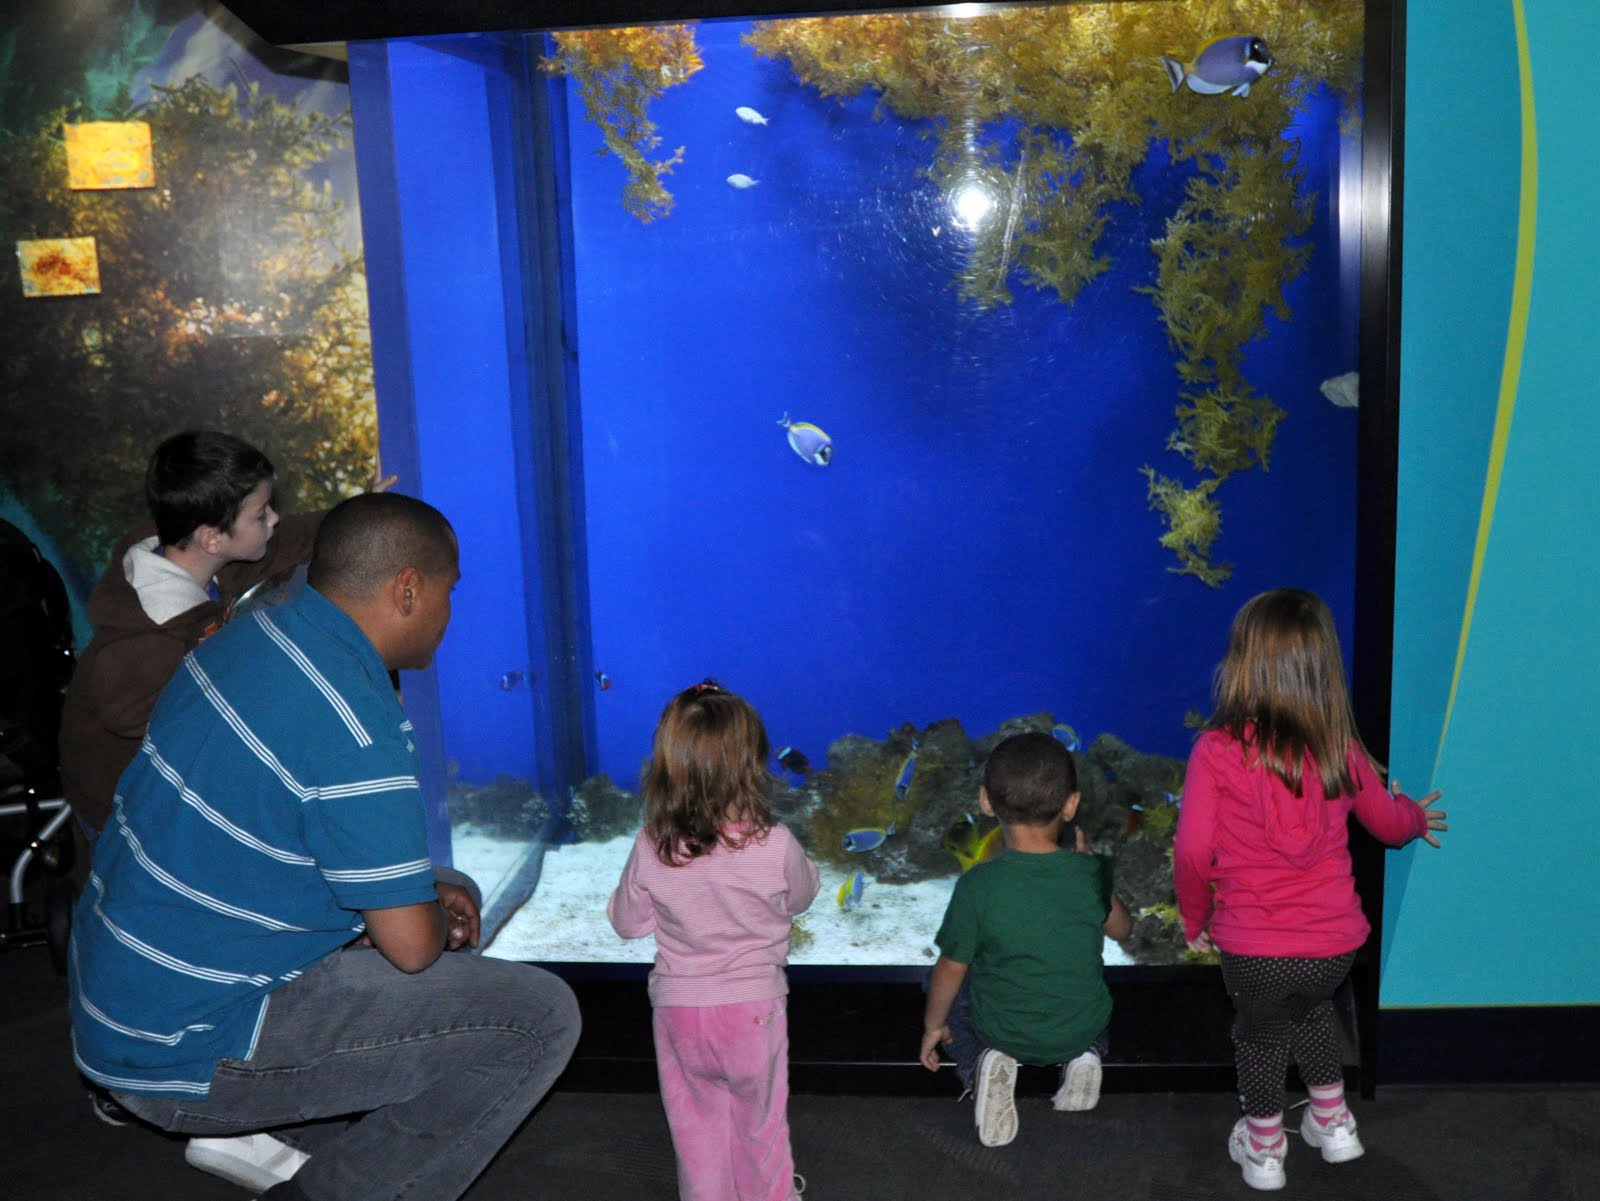 Taking on The World With Our Boy: Adventure Aquarium in Camden, New Jersey - ADventure%2BAquarium%2Bin%2BCamDen%2B052